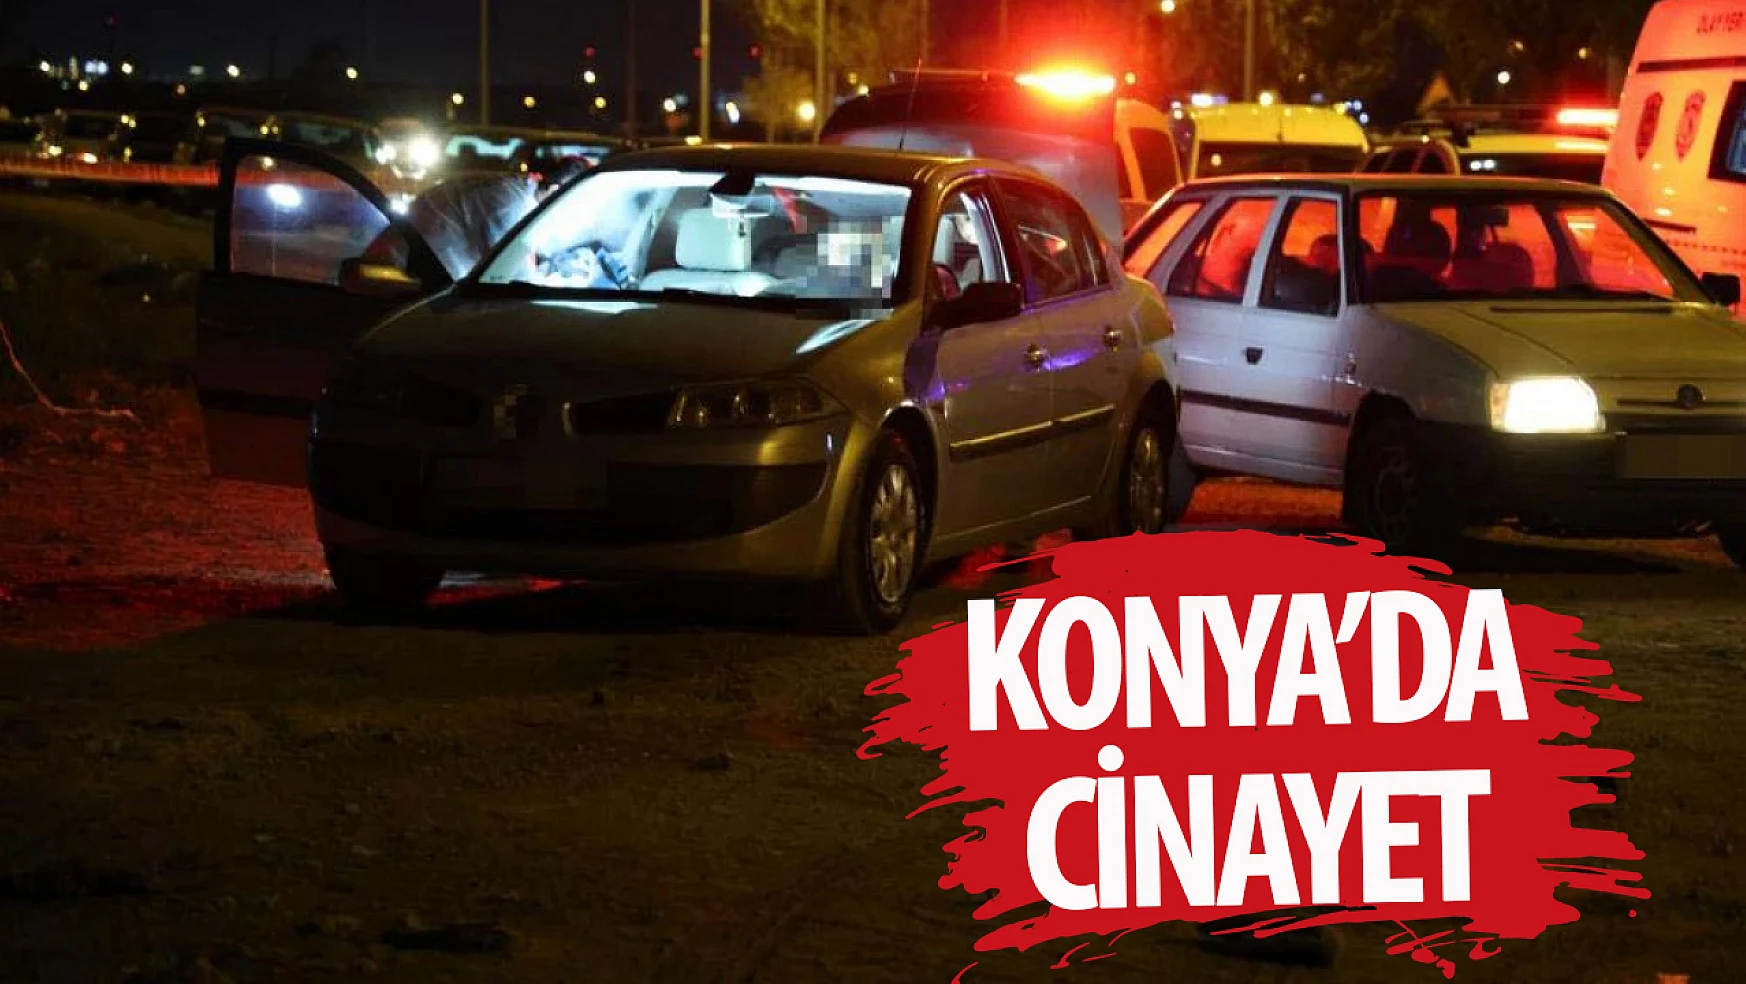 Konya'da cinayet: Bir kişi vurularak öldürüldü!